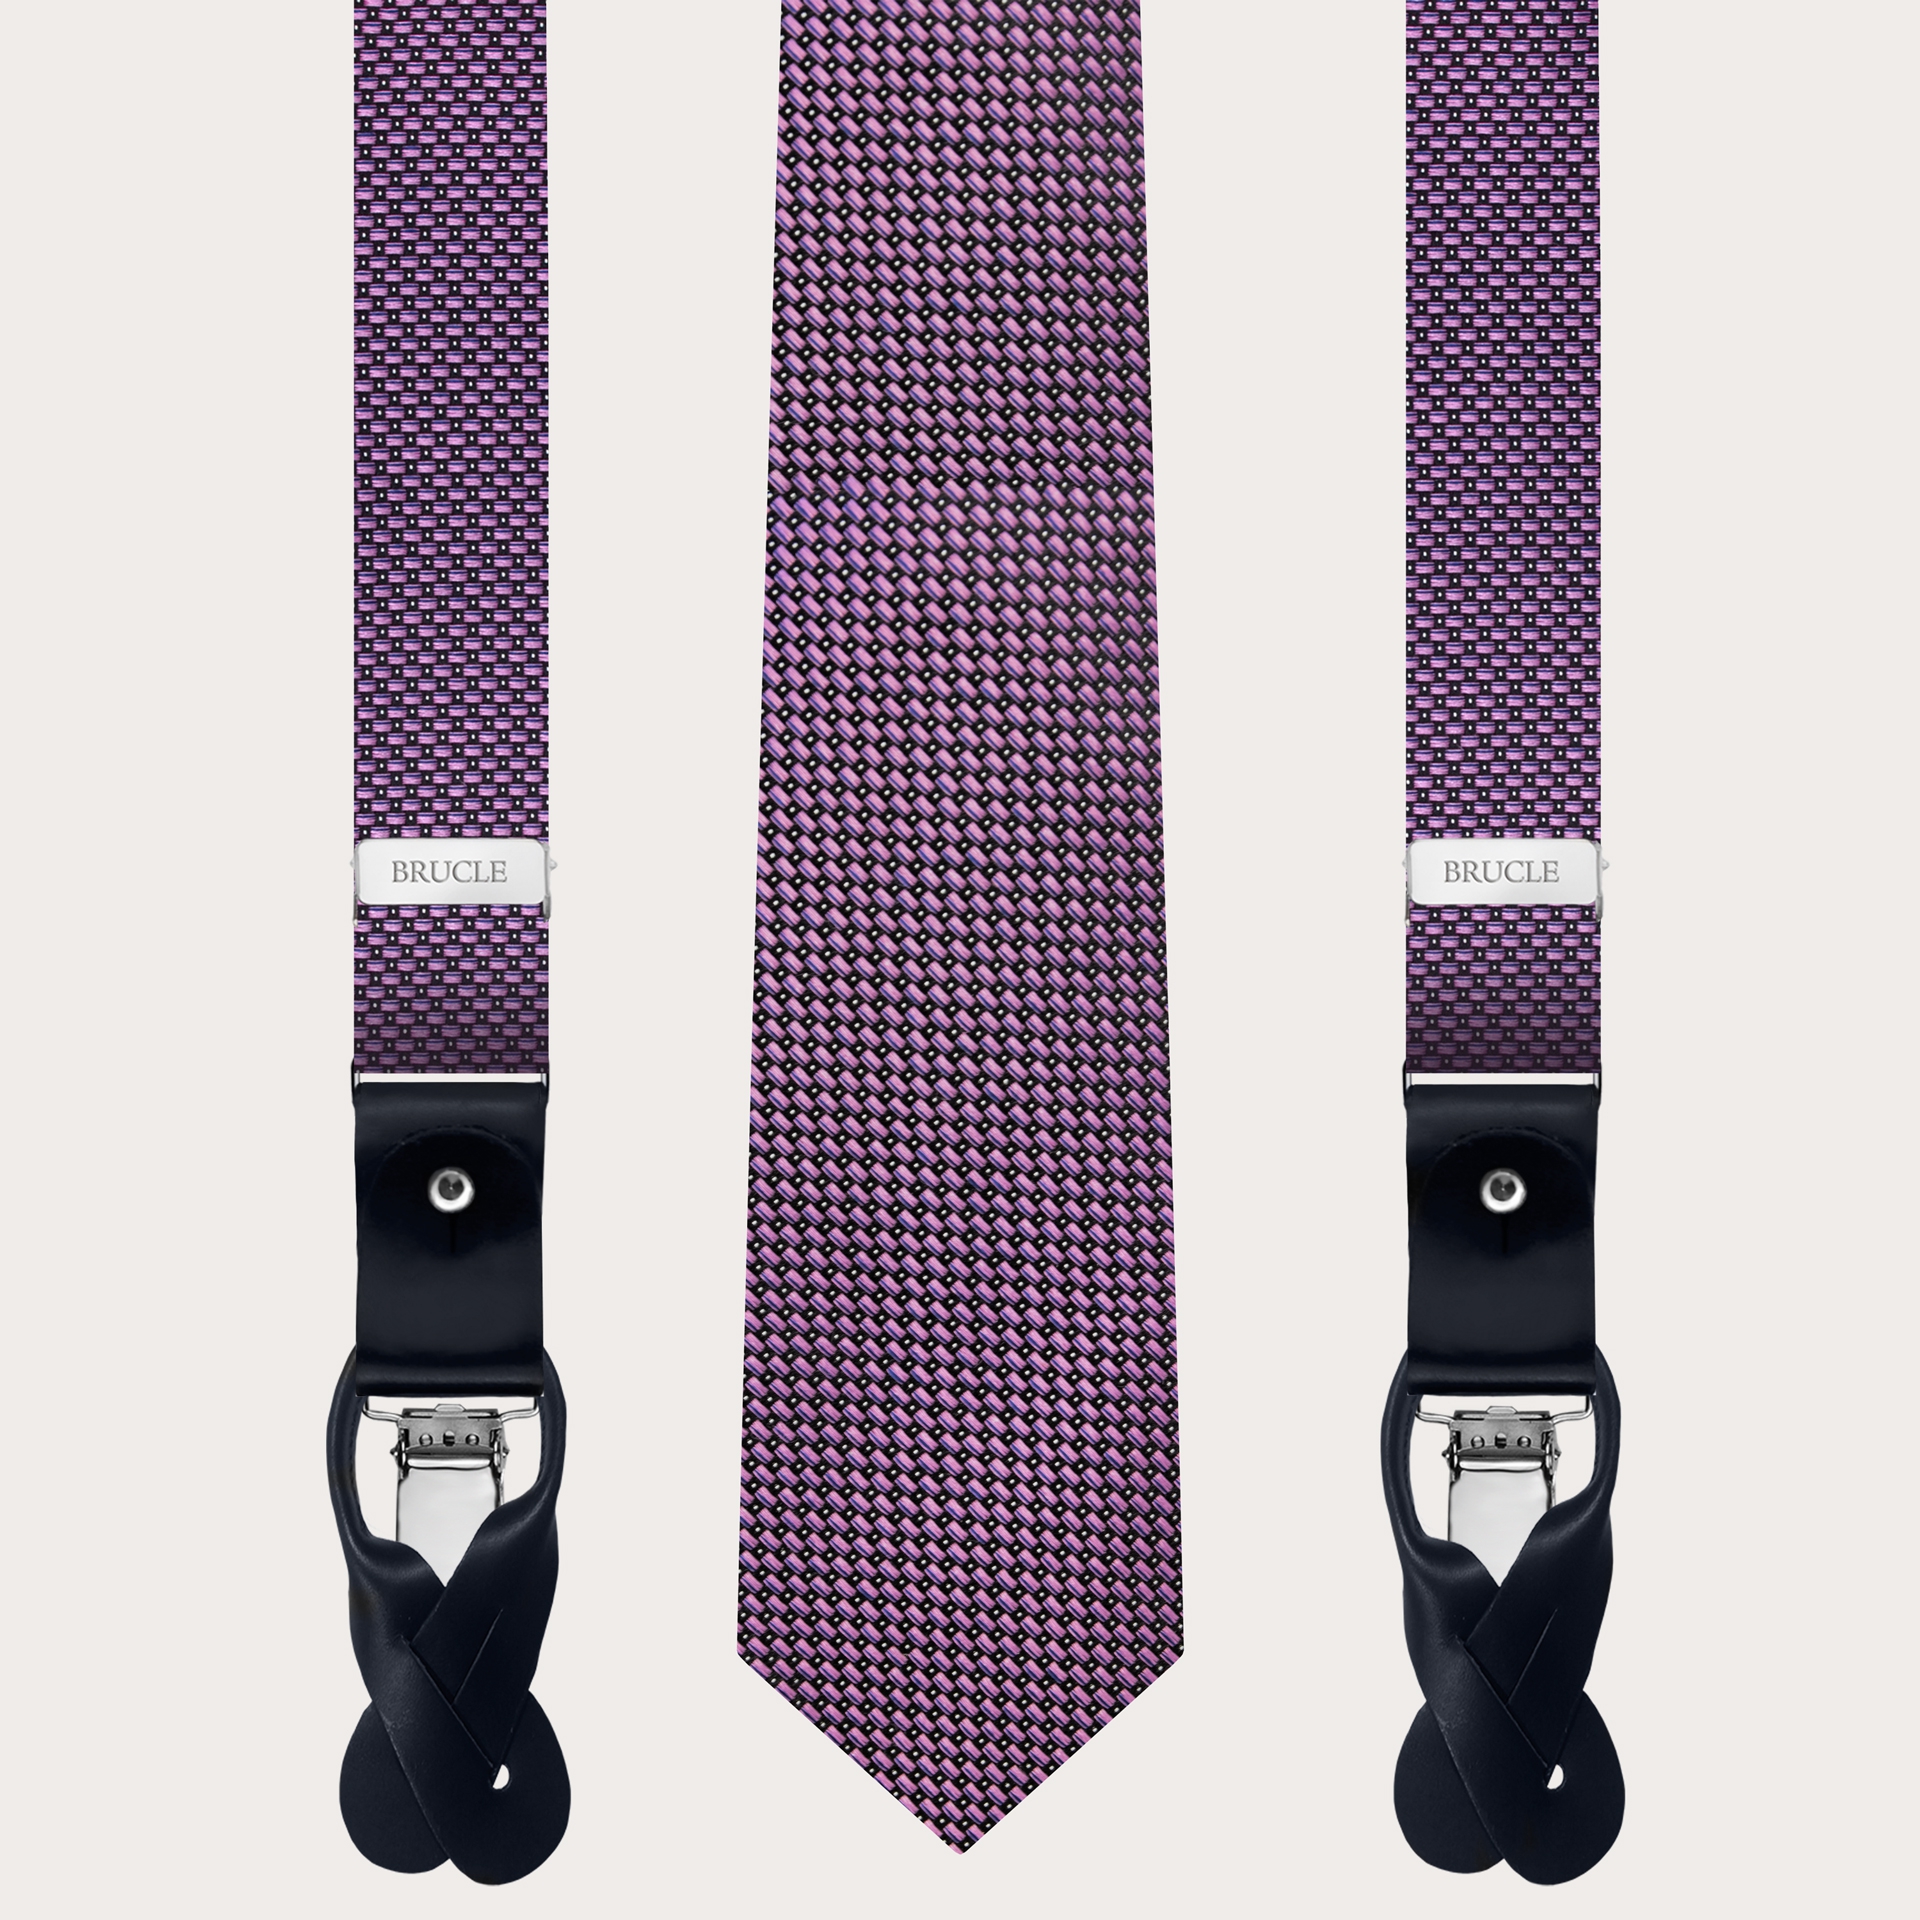 Abgestimmtes Set aus Schmale Hosenträgern und Krawatte aus Jacquardseide, rosa punkte